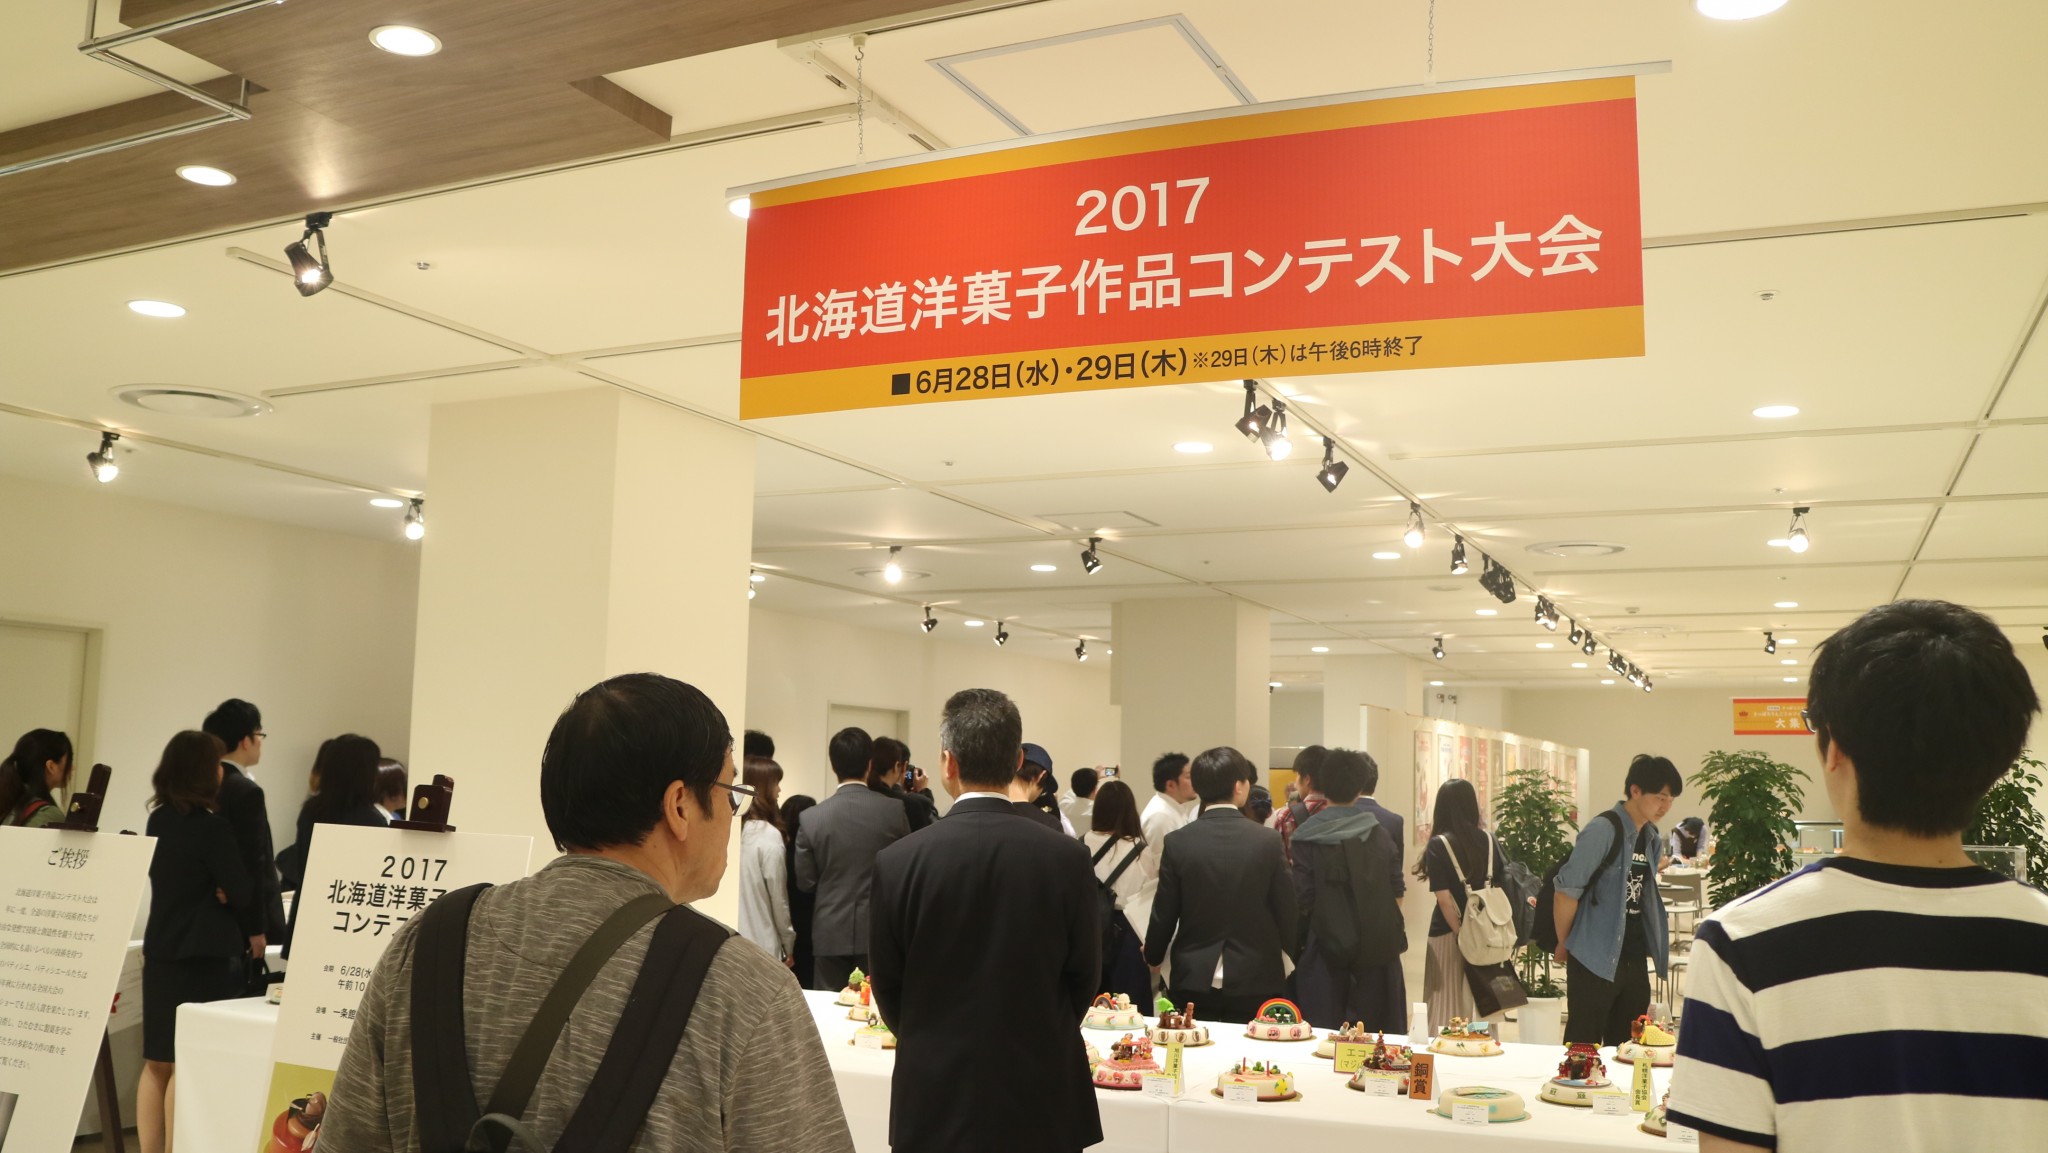 パティシエ科 2017北海道洋菓子作品コンテストの結果発表 札幌ベルエポック製菓調理ウェディング専門学校 パティシエ シェフ カフェ業界のプロを目指す